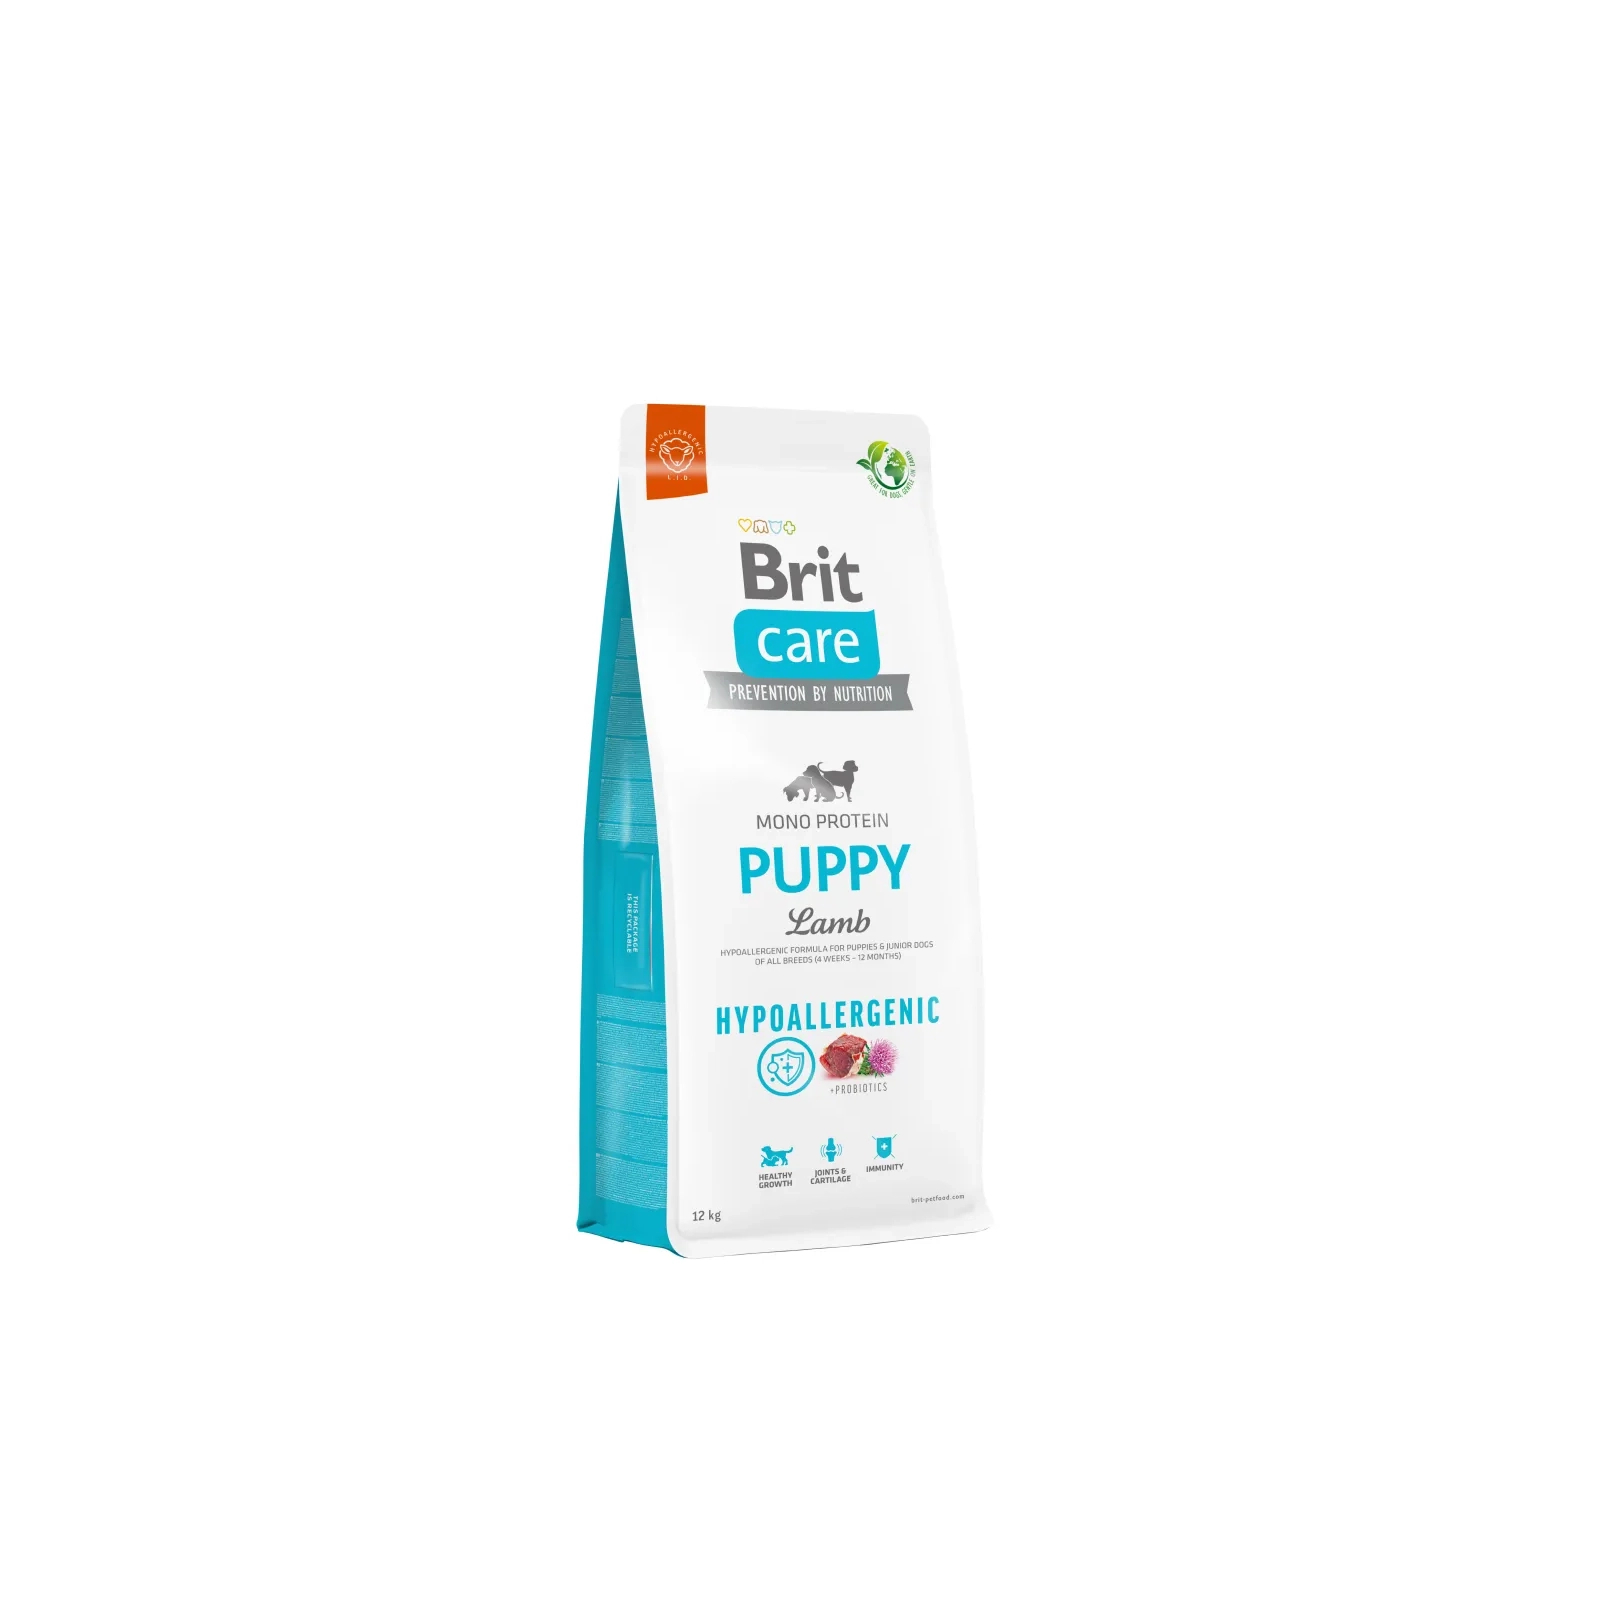 Сухой корм для собак Brit Care Dog Hypoallergenic Puppy гипоаллергенный с ягненком 12 кг (8595602558957)